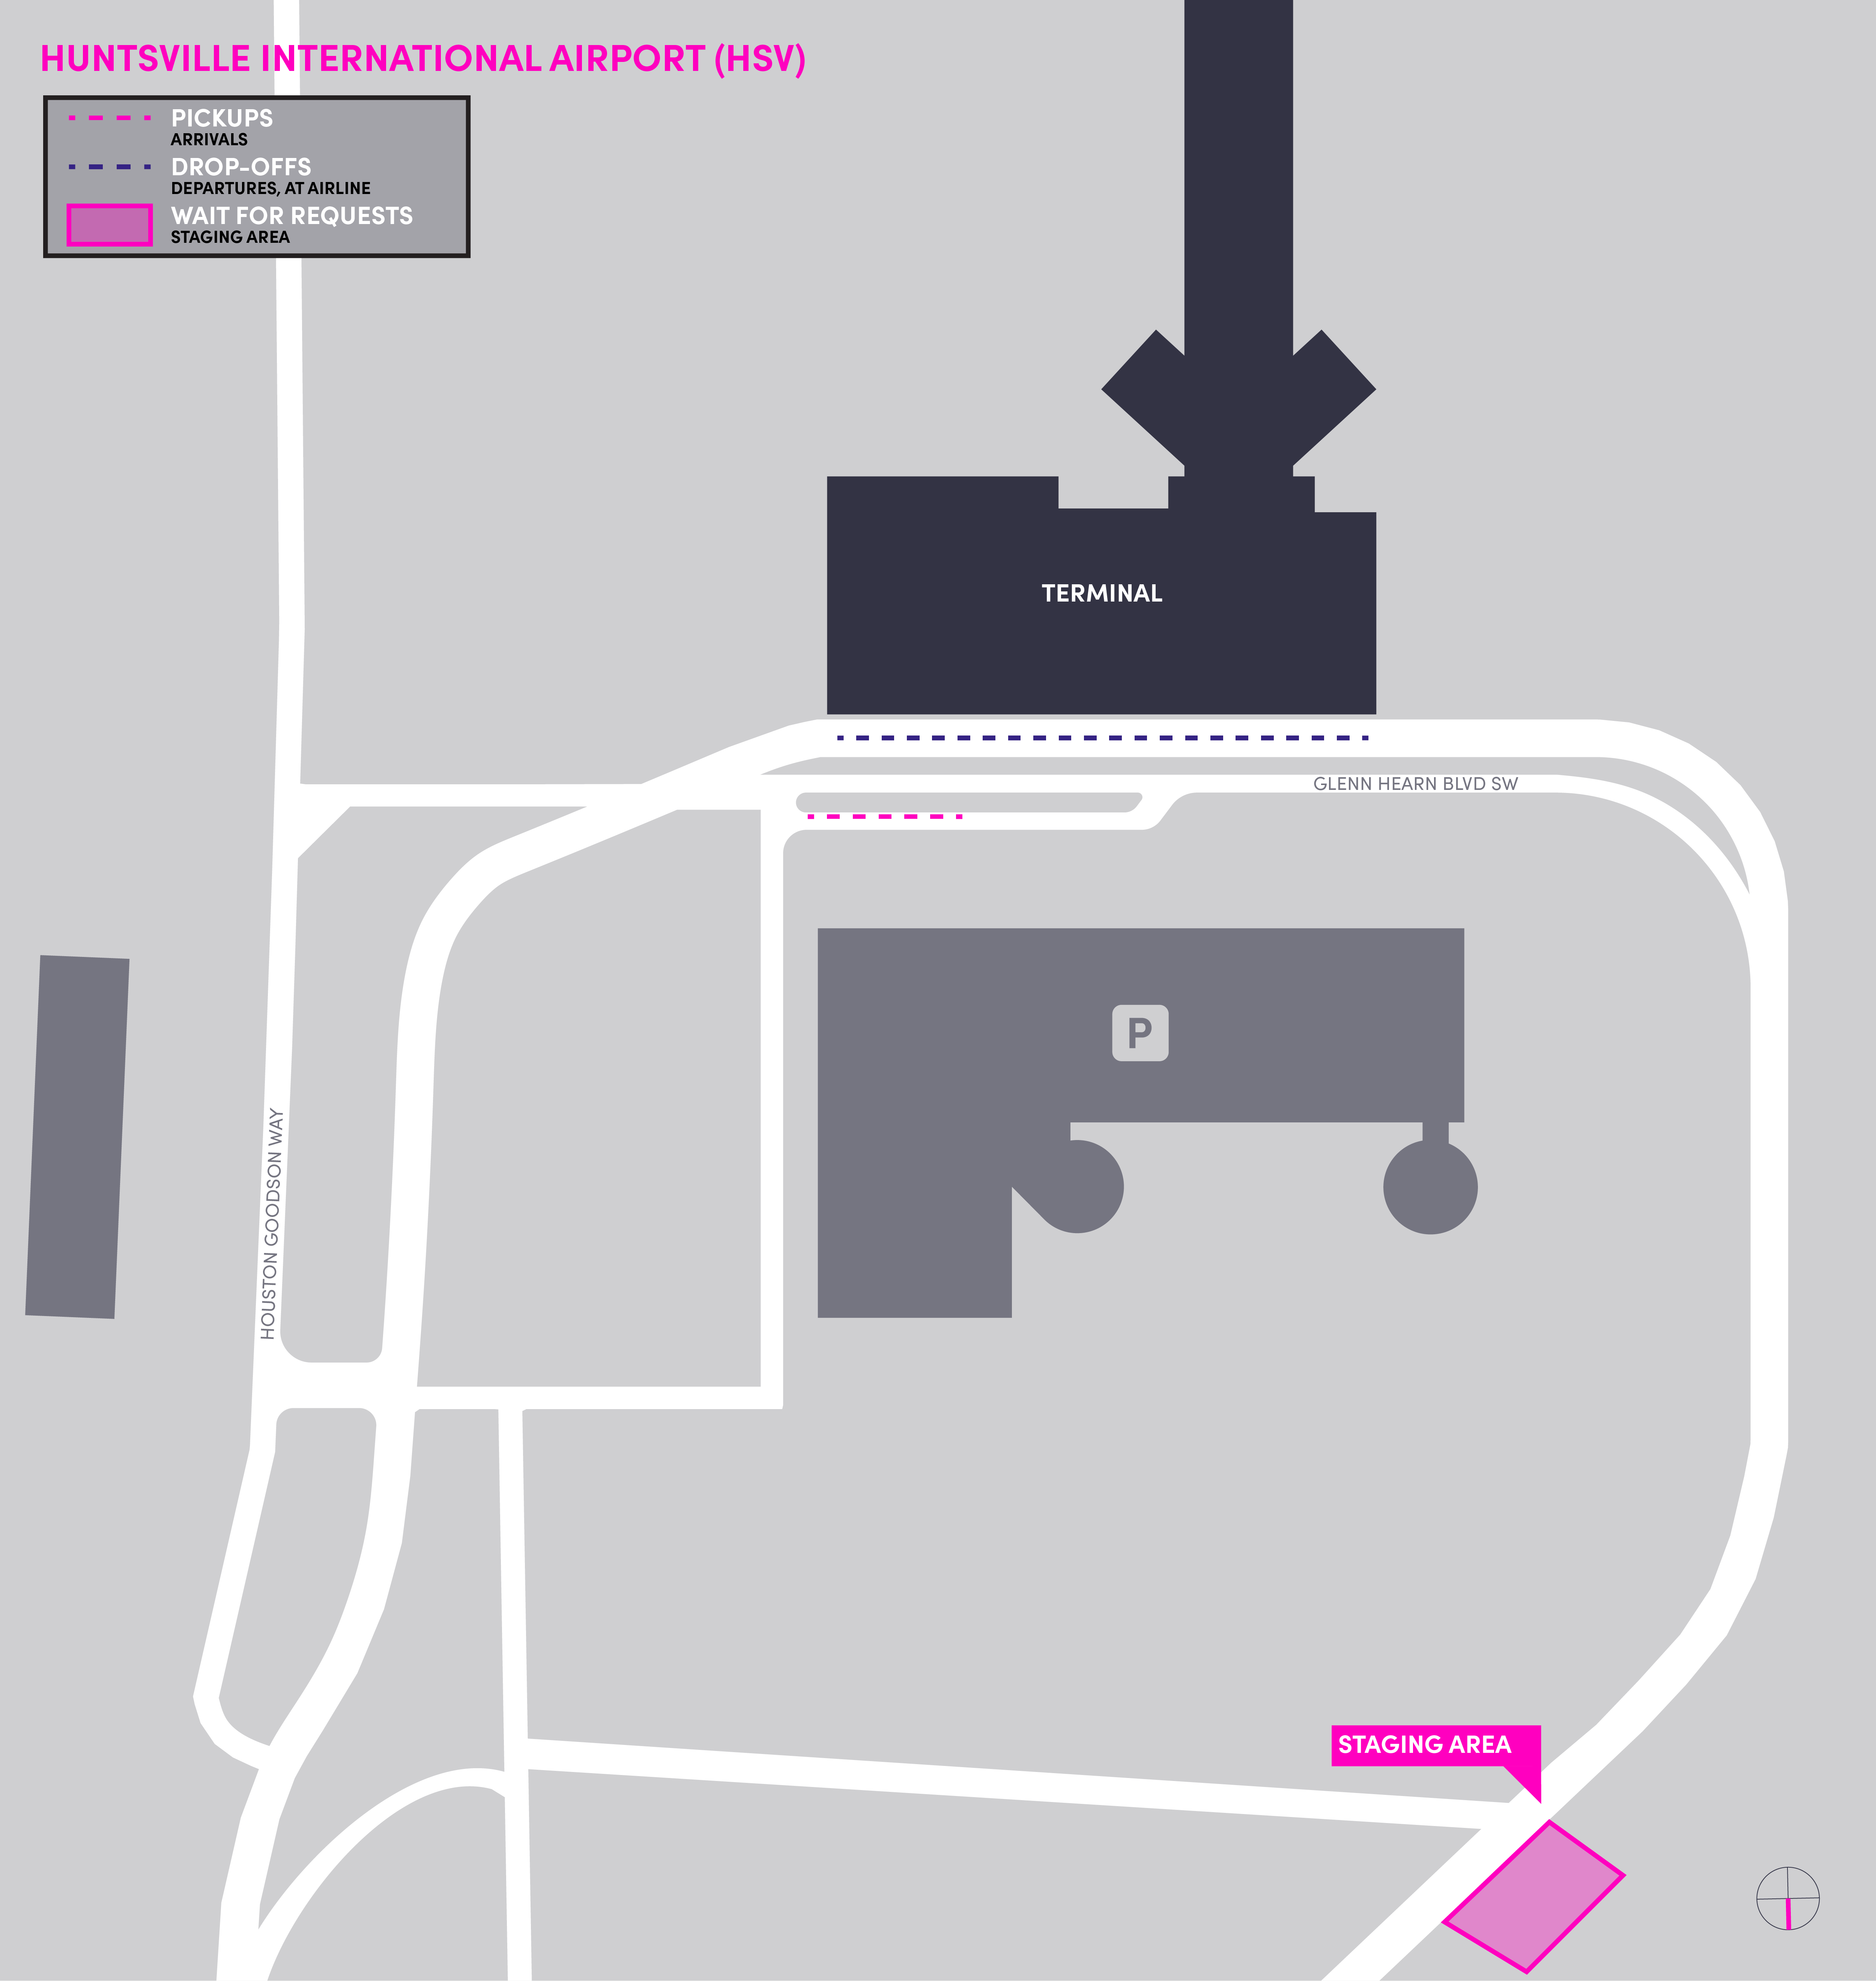 Esta imagem é um mapa do aeroporto HSV. Ela inclui o local de espera, o ponto de encontro e as áreas de desembarque.